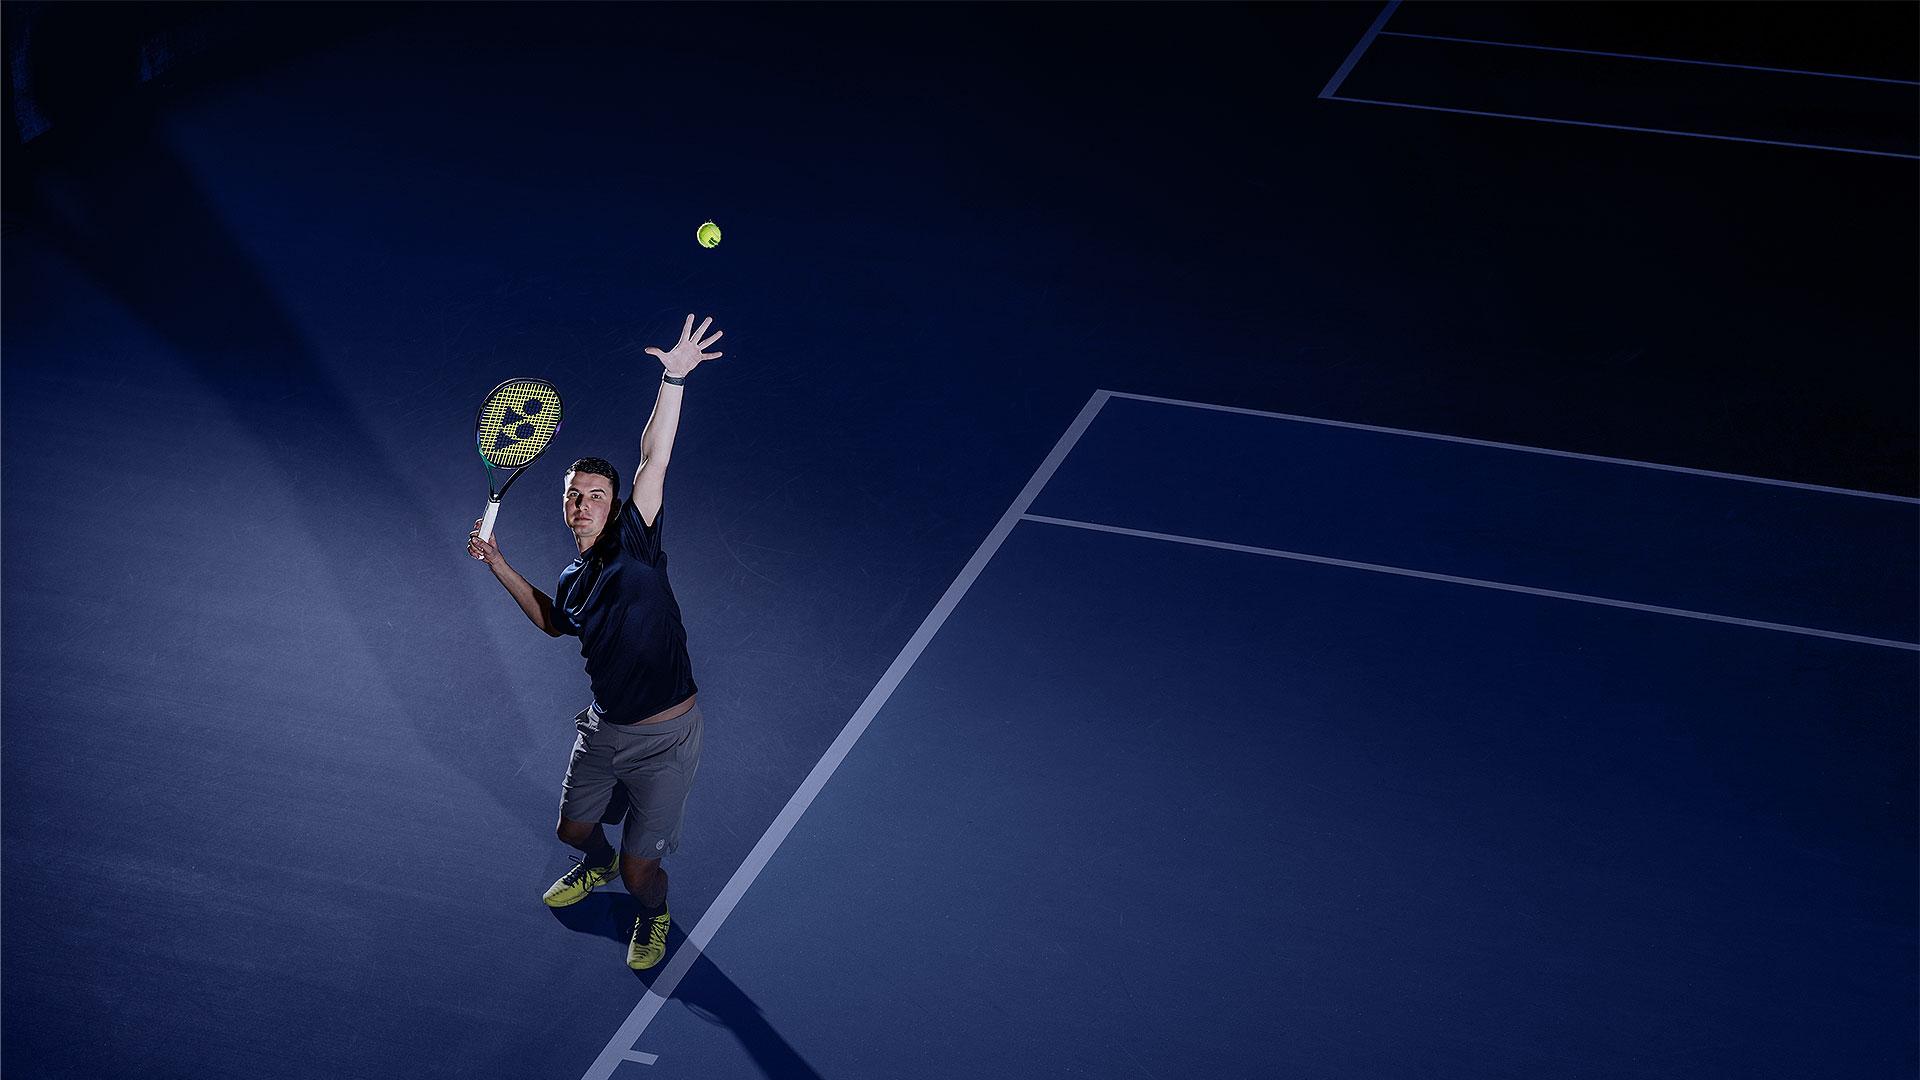 Titelbild von Danubis, zeigt einen Tennisspieler bei einer Angabe.